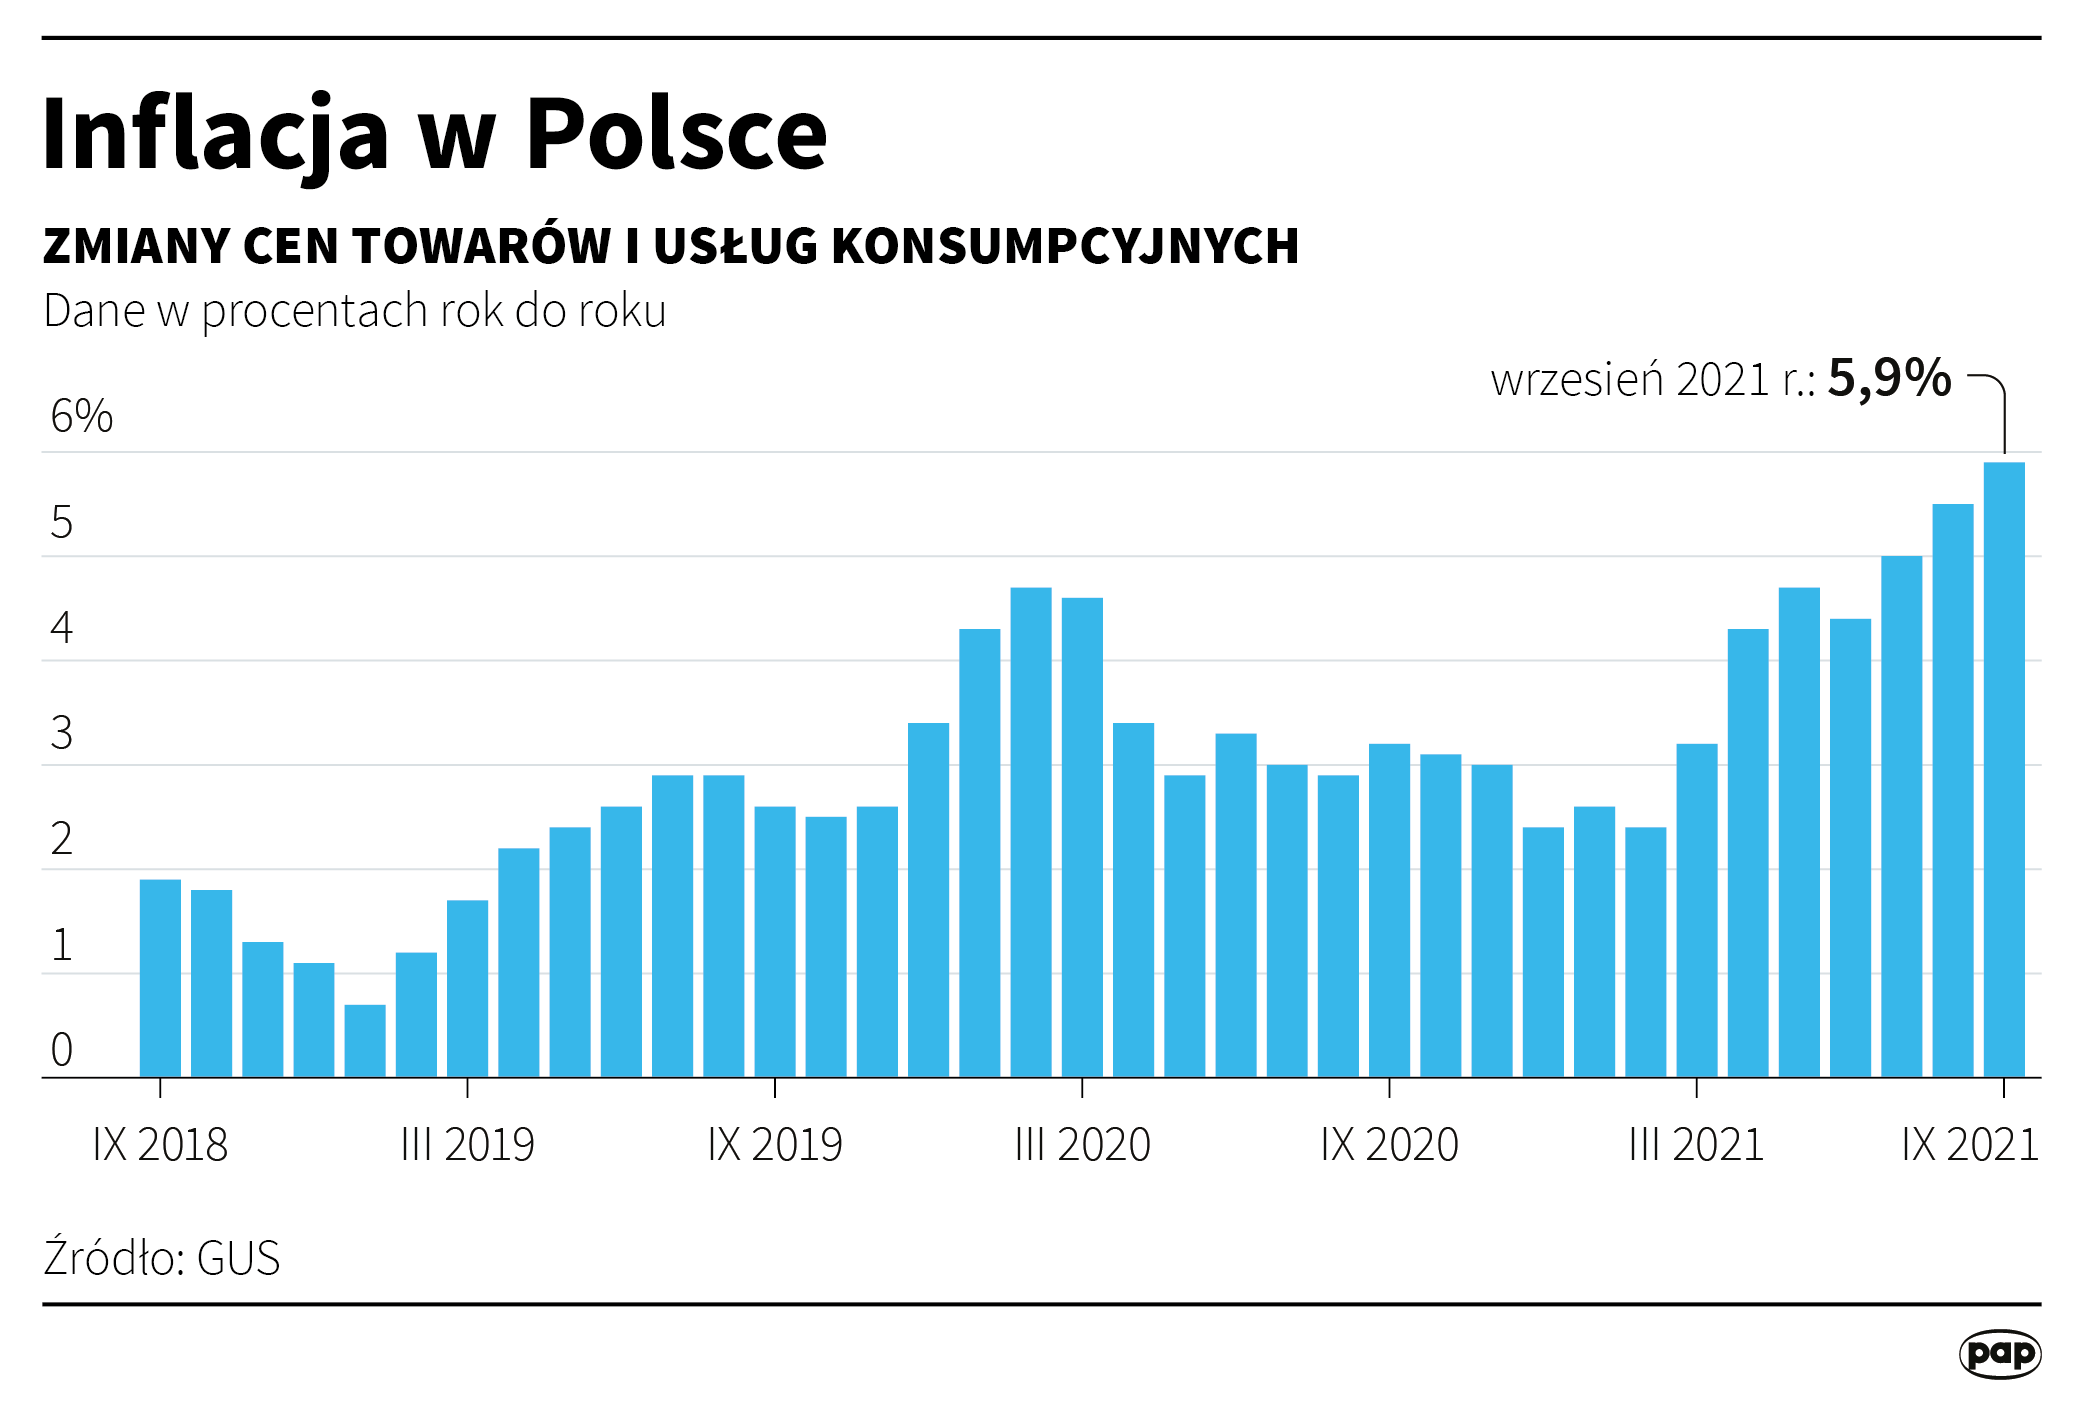 Inflacja W Polsce W 2021 I 2022 Roku Prognozy Goldman Sachs Dotyczace Wzrostu Cen Towarow I Uslug Tvn24 Biznes